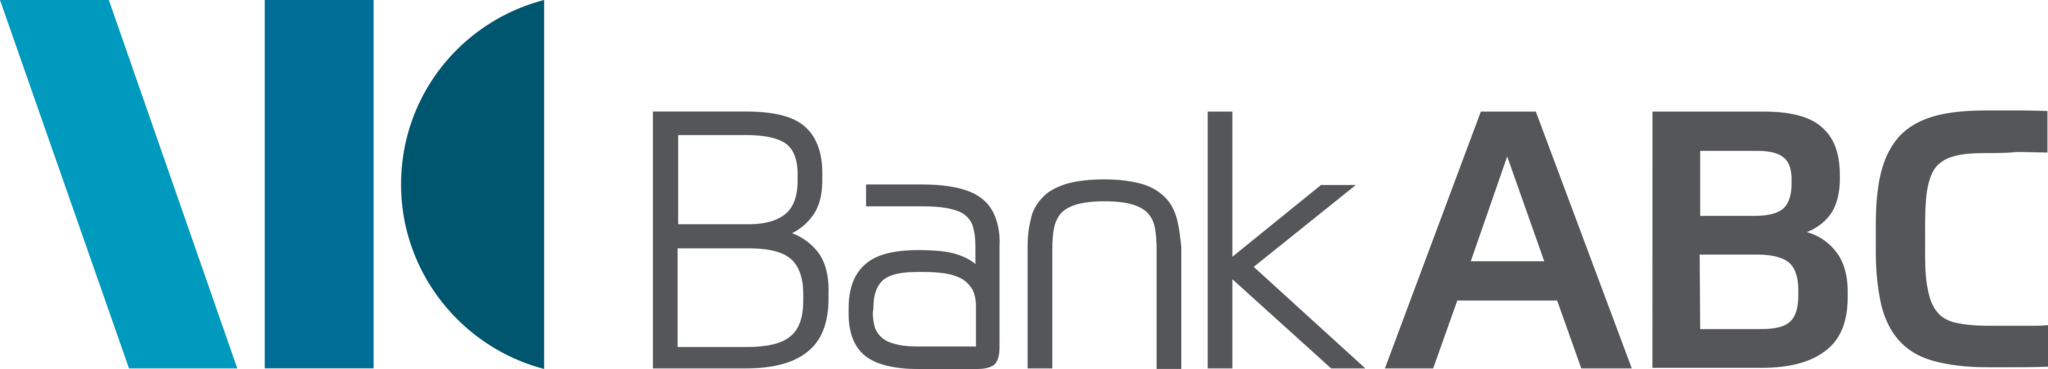 Bank ABC Logo 2048x369 